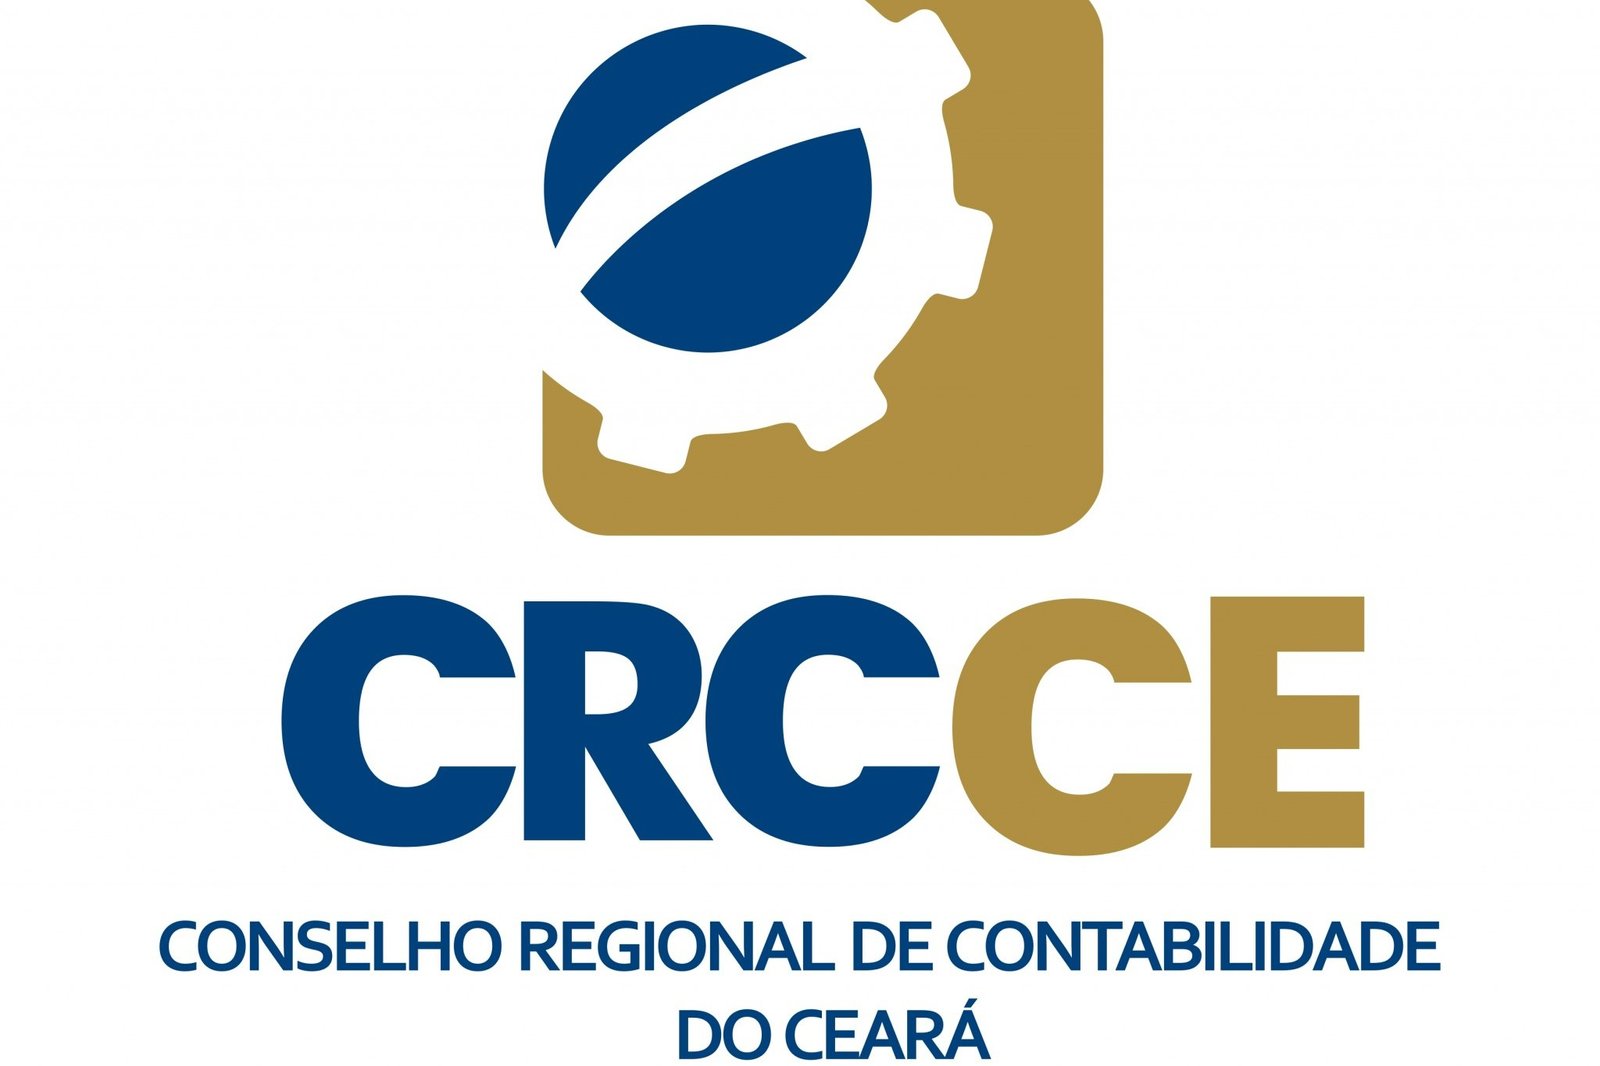 Conselho Regional de Contabilidade do Ceará institui medidas para a execução dos trabalhos em home office e presencia